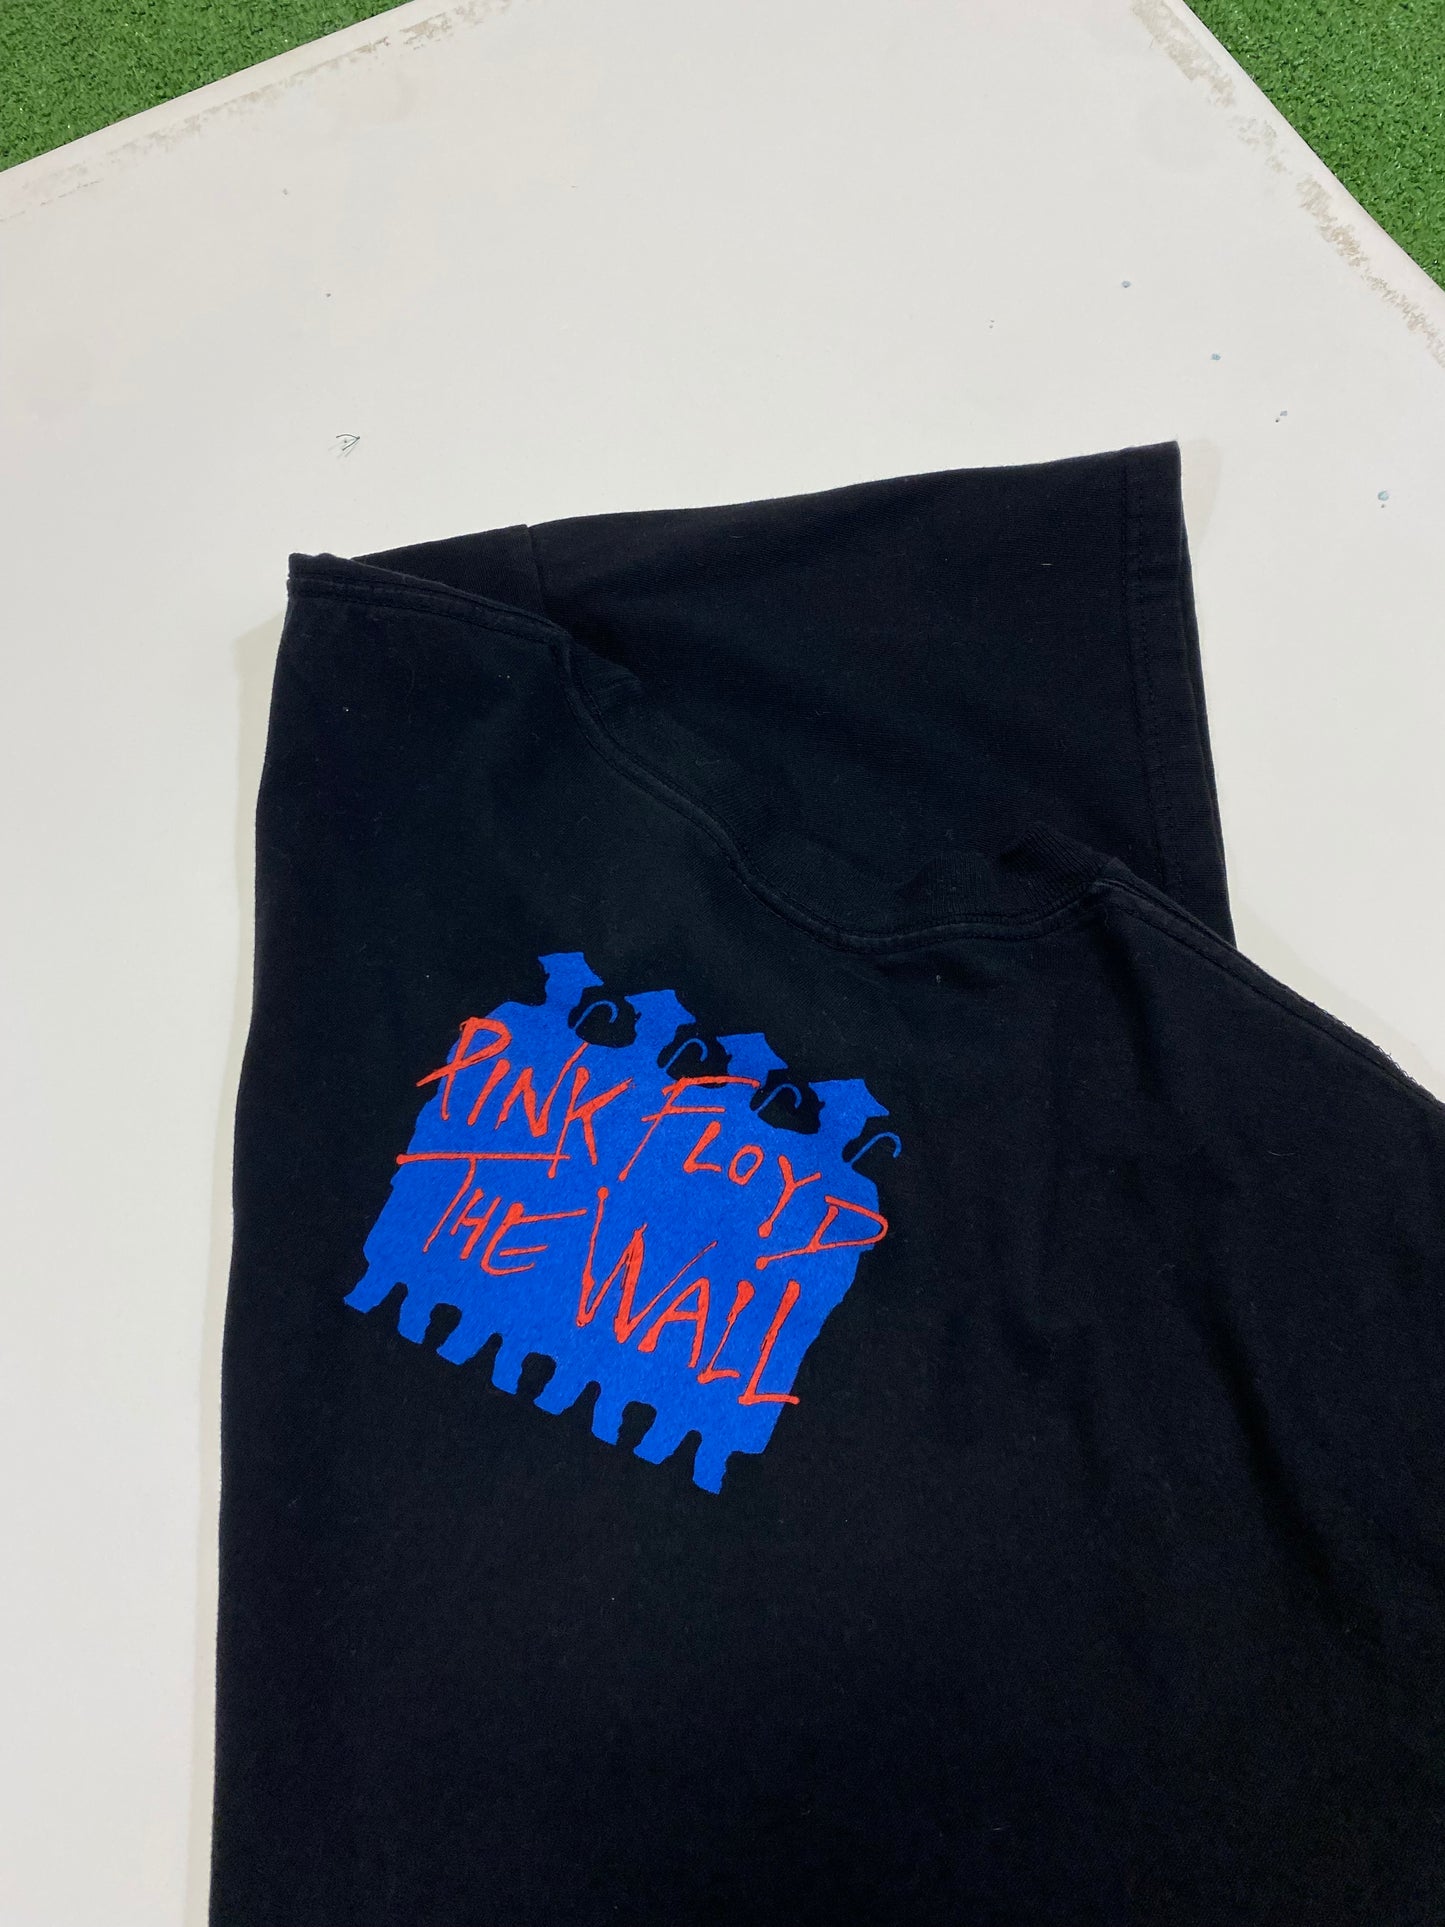 2001 Pink Floyd “The Wall” Cygnus T-Shirt XL